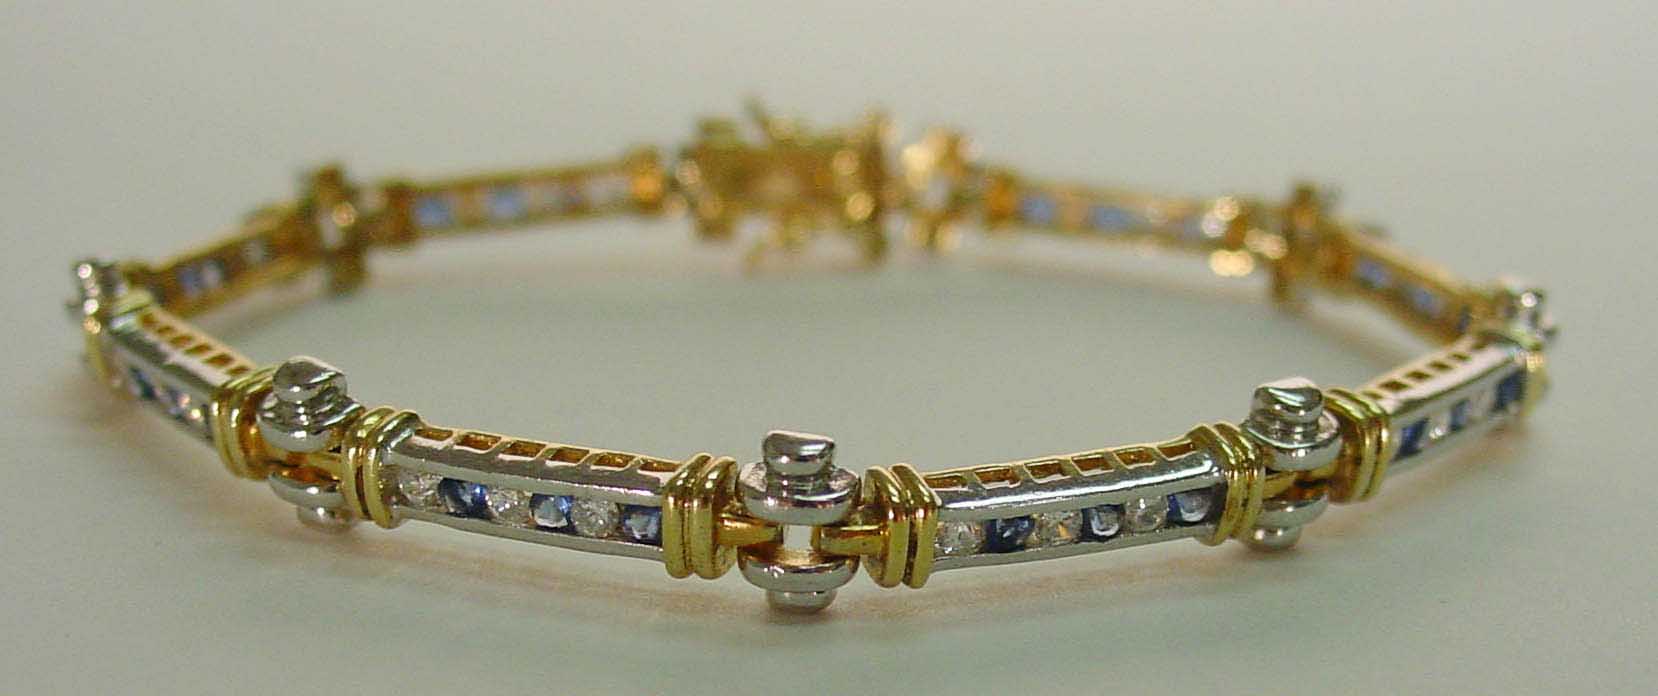 Sapphire CZ & Clear CZ bracelet in channel setting